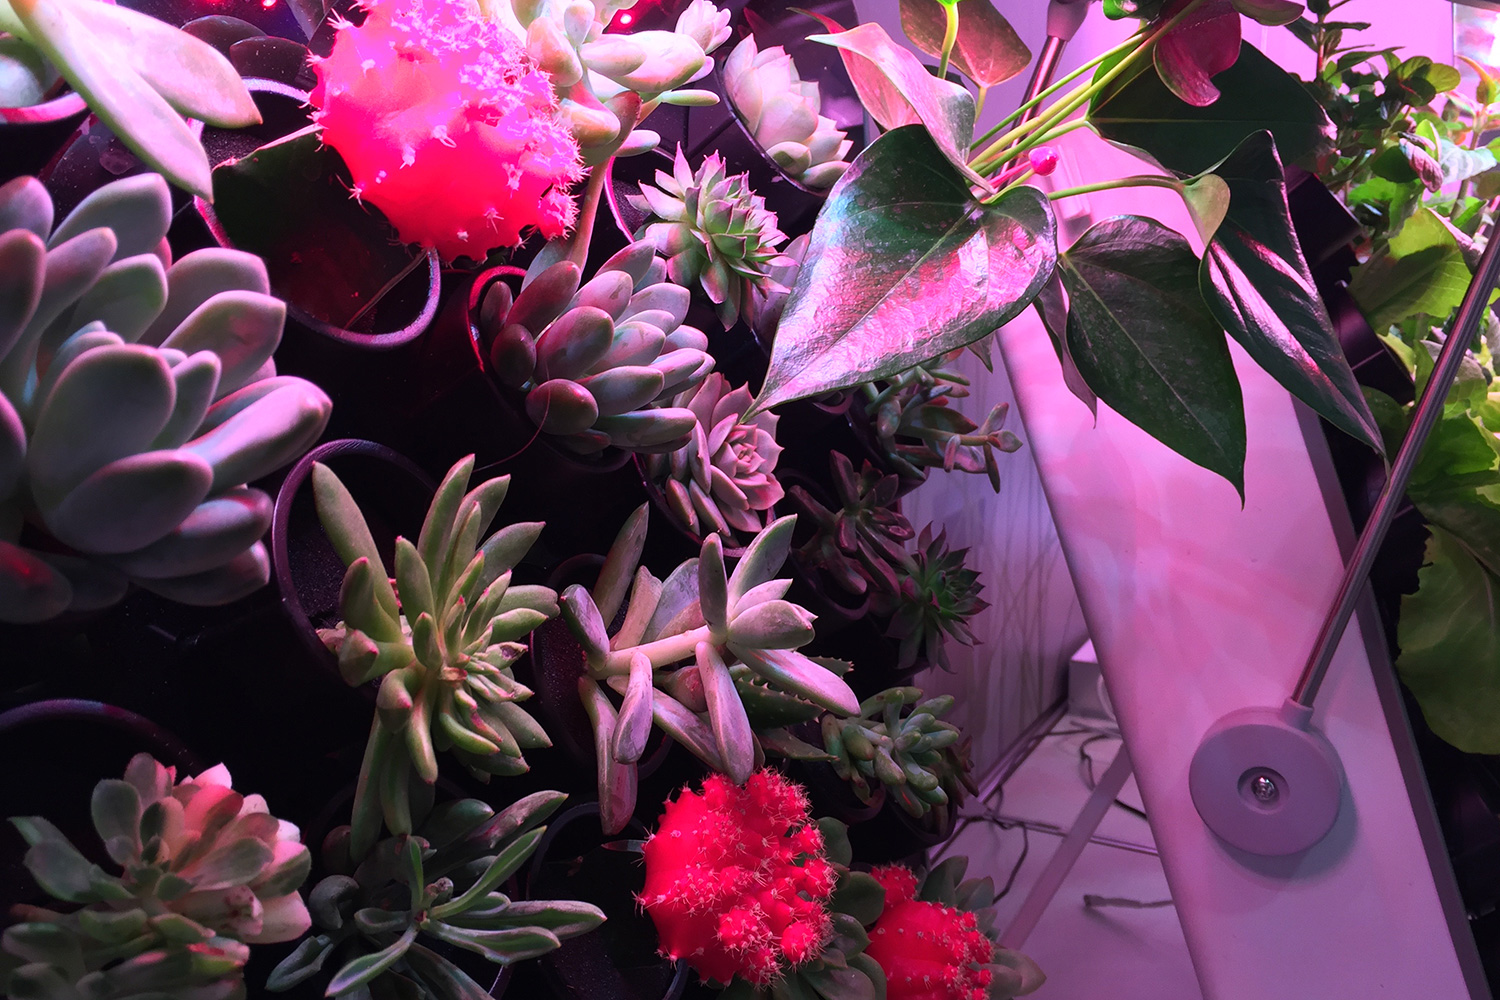 smart indoor garden opcomlink ces 2017 growframe 07